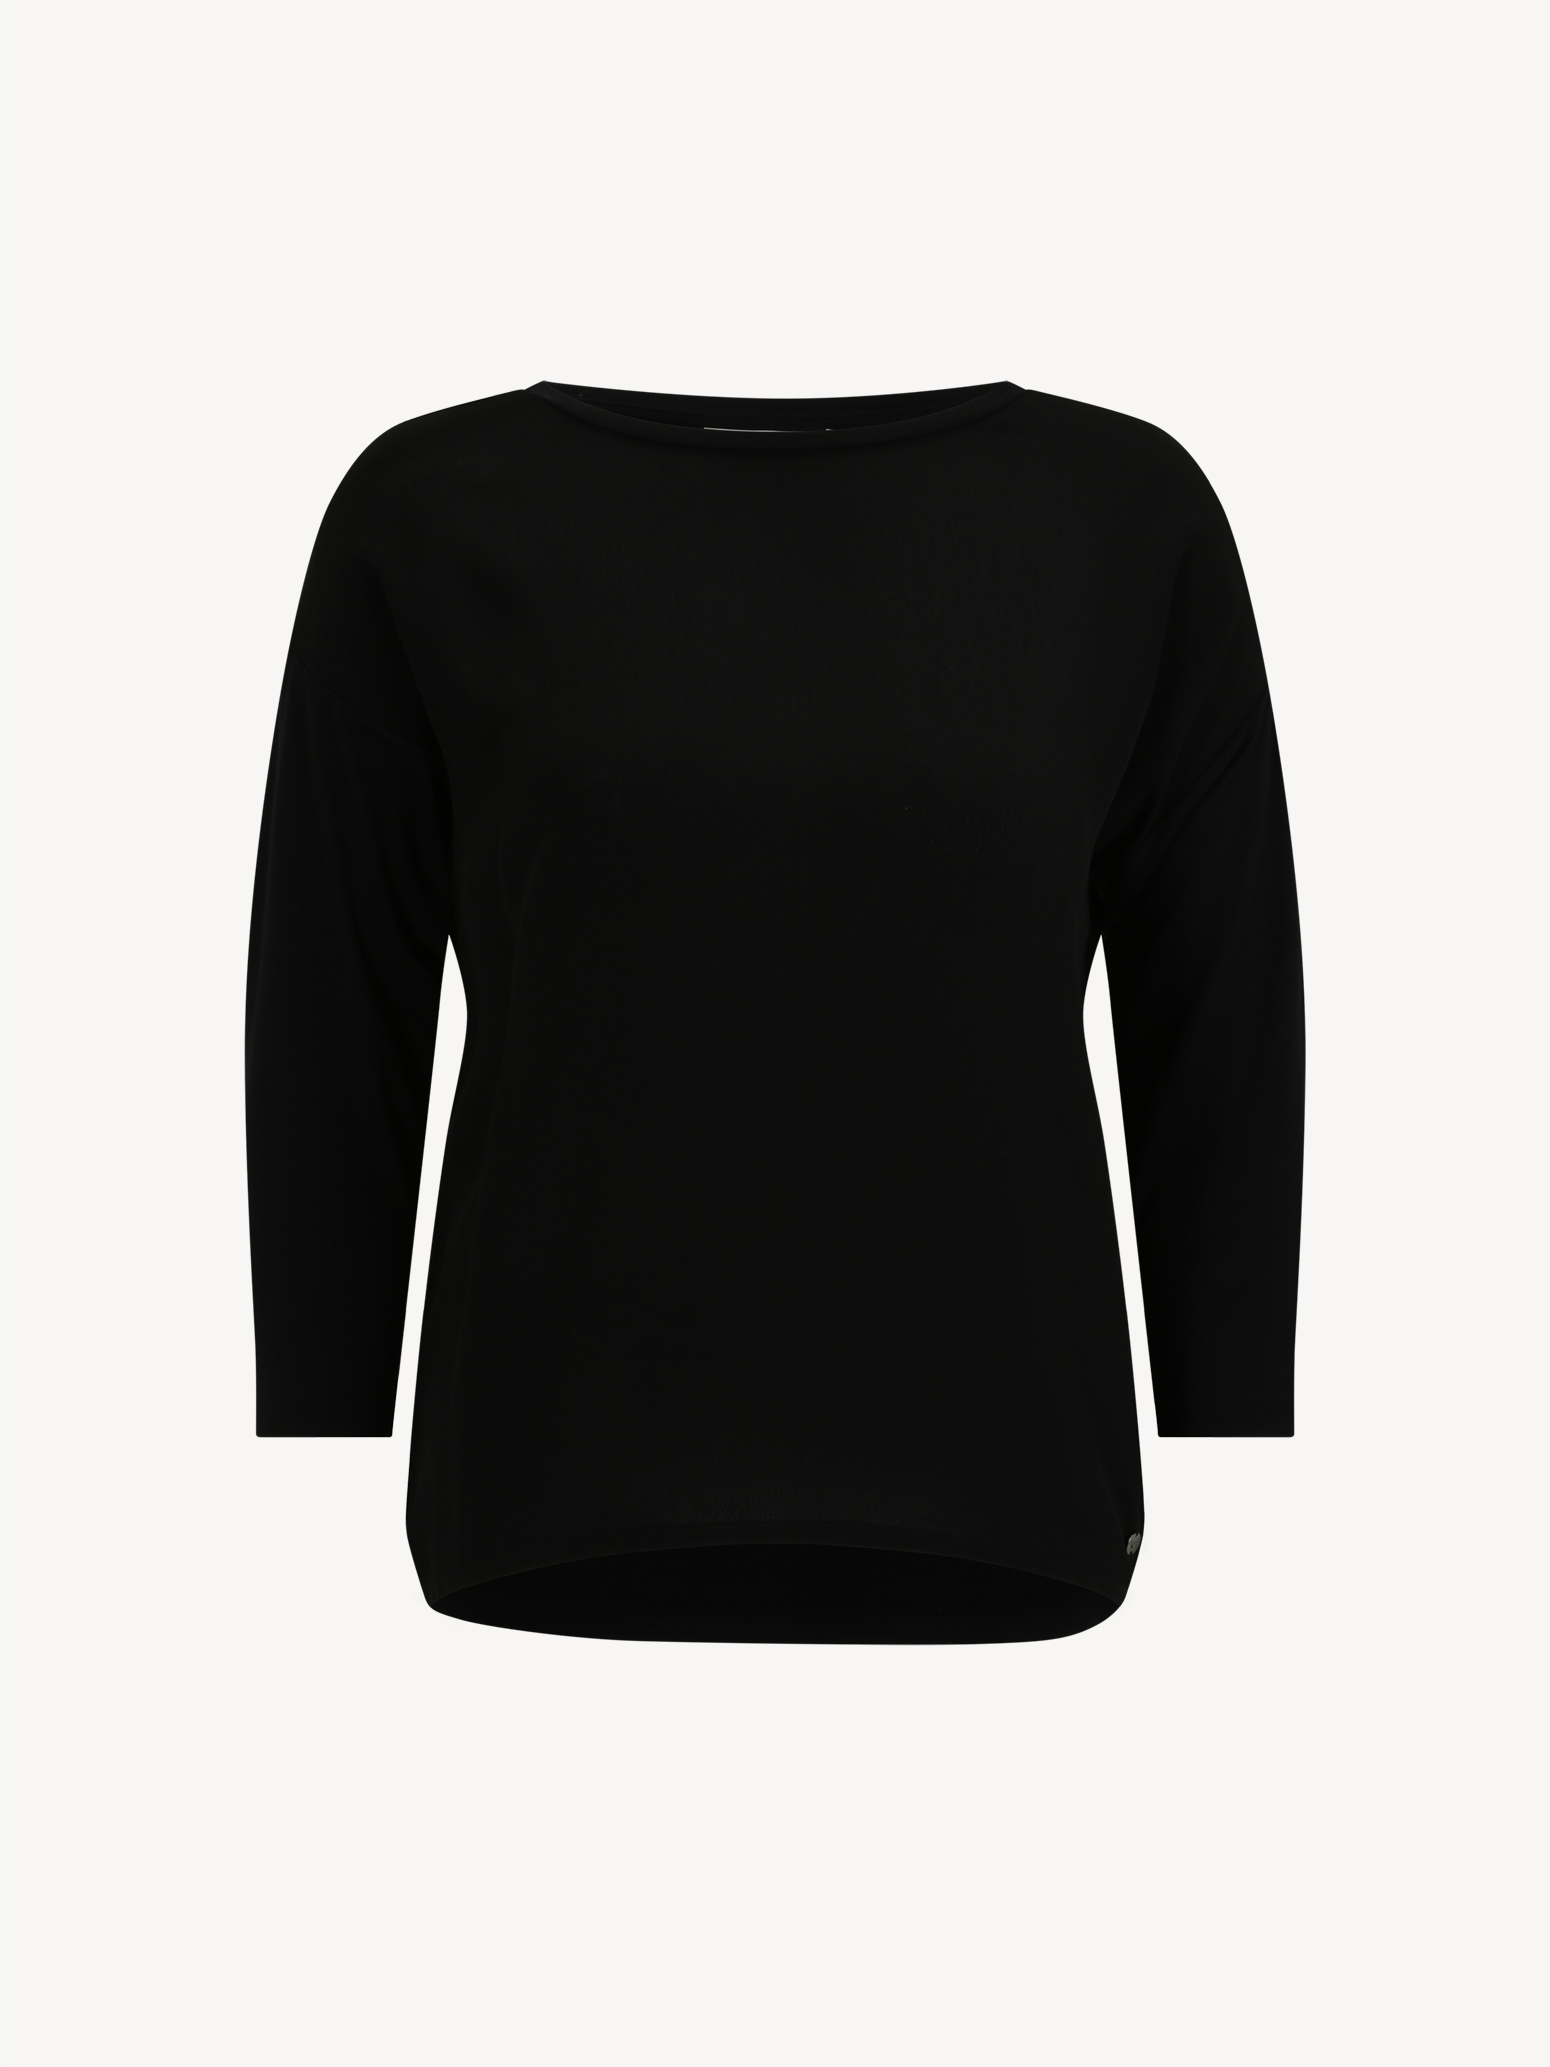 Langarmshirt/Longsleeve - schwarz TAW0372-80009: Tamaris Shirts & Tops  online kaufen!